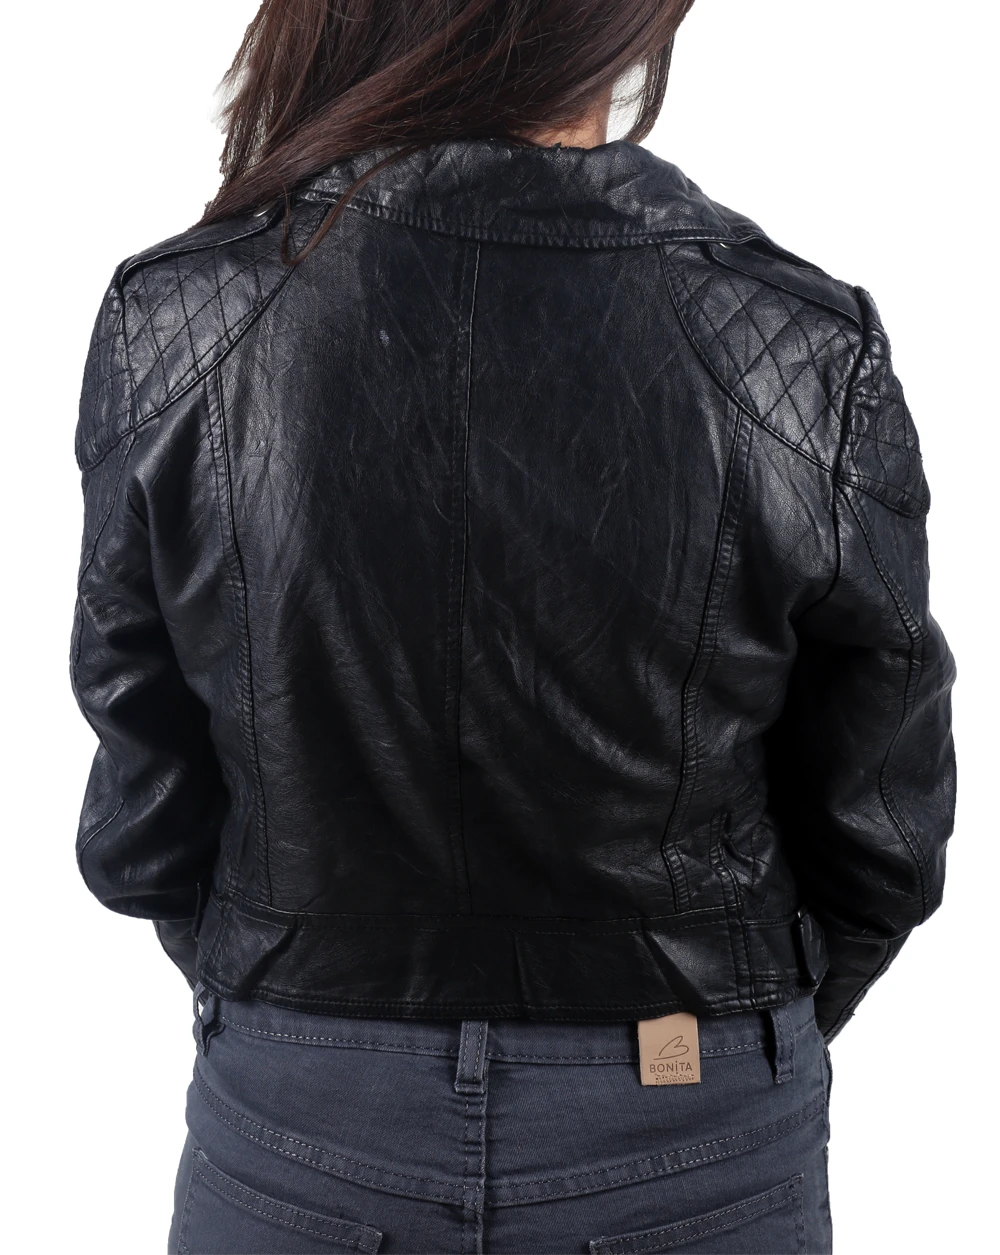 Basic Black Biker Jacket for women